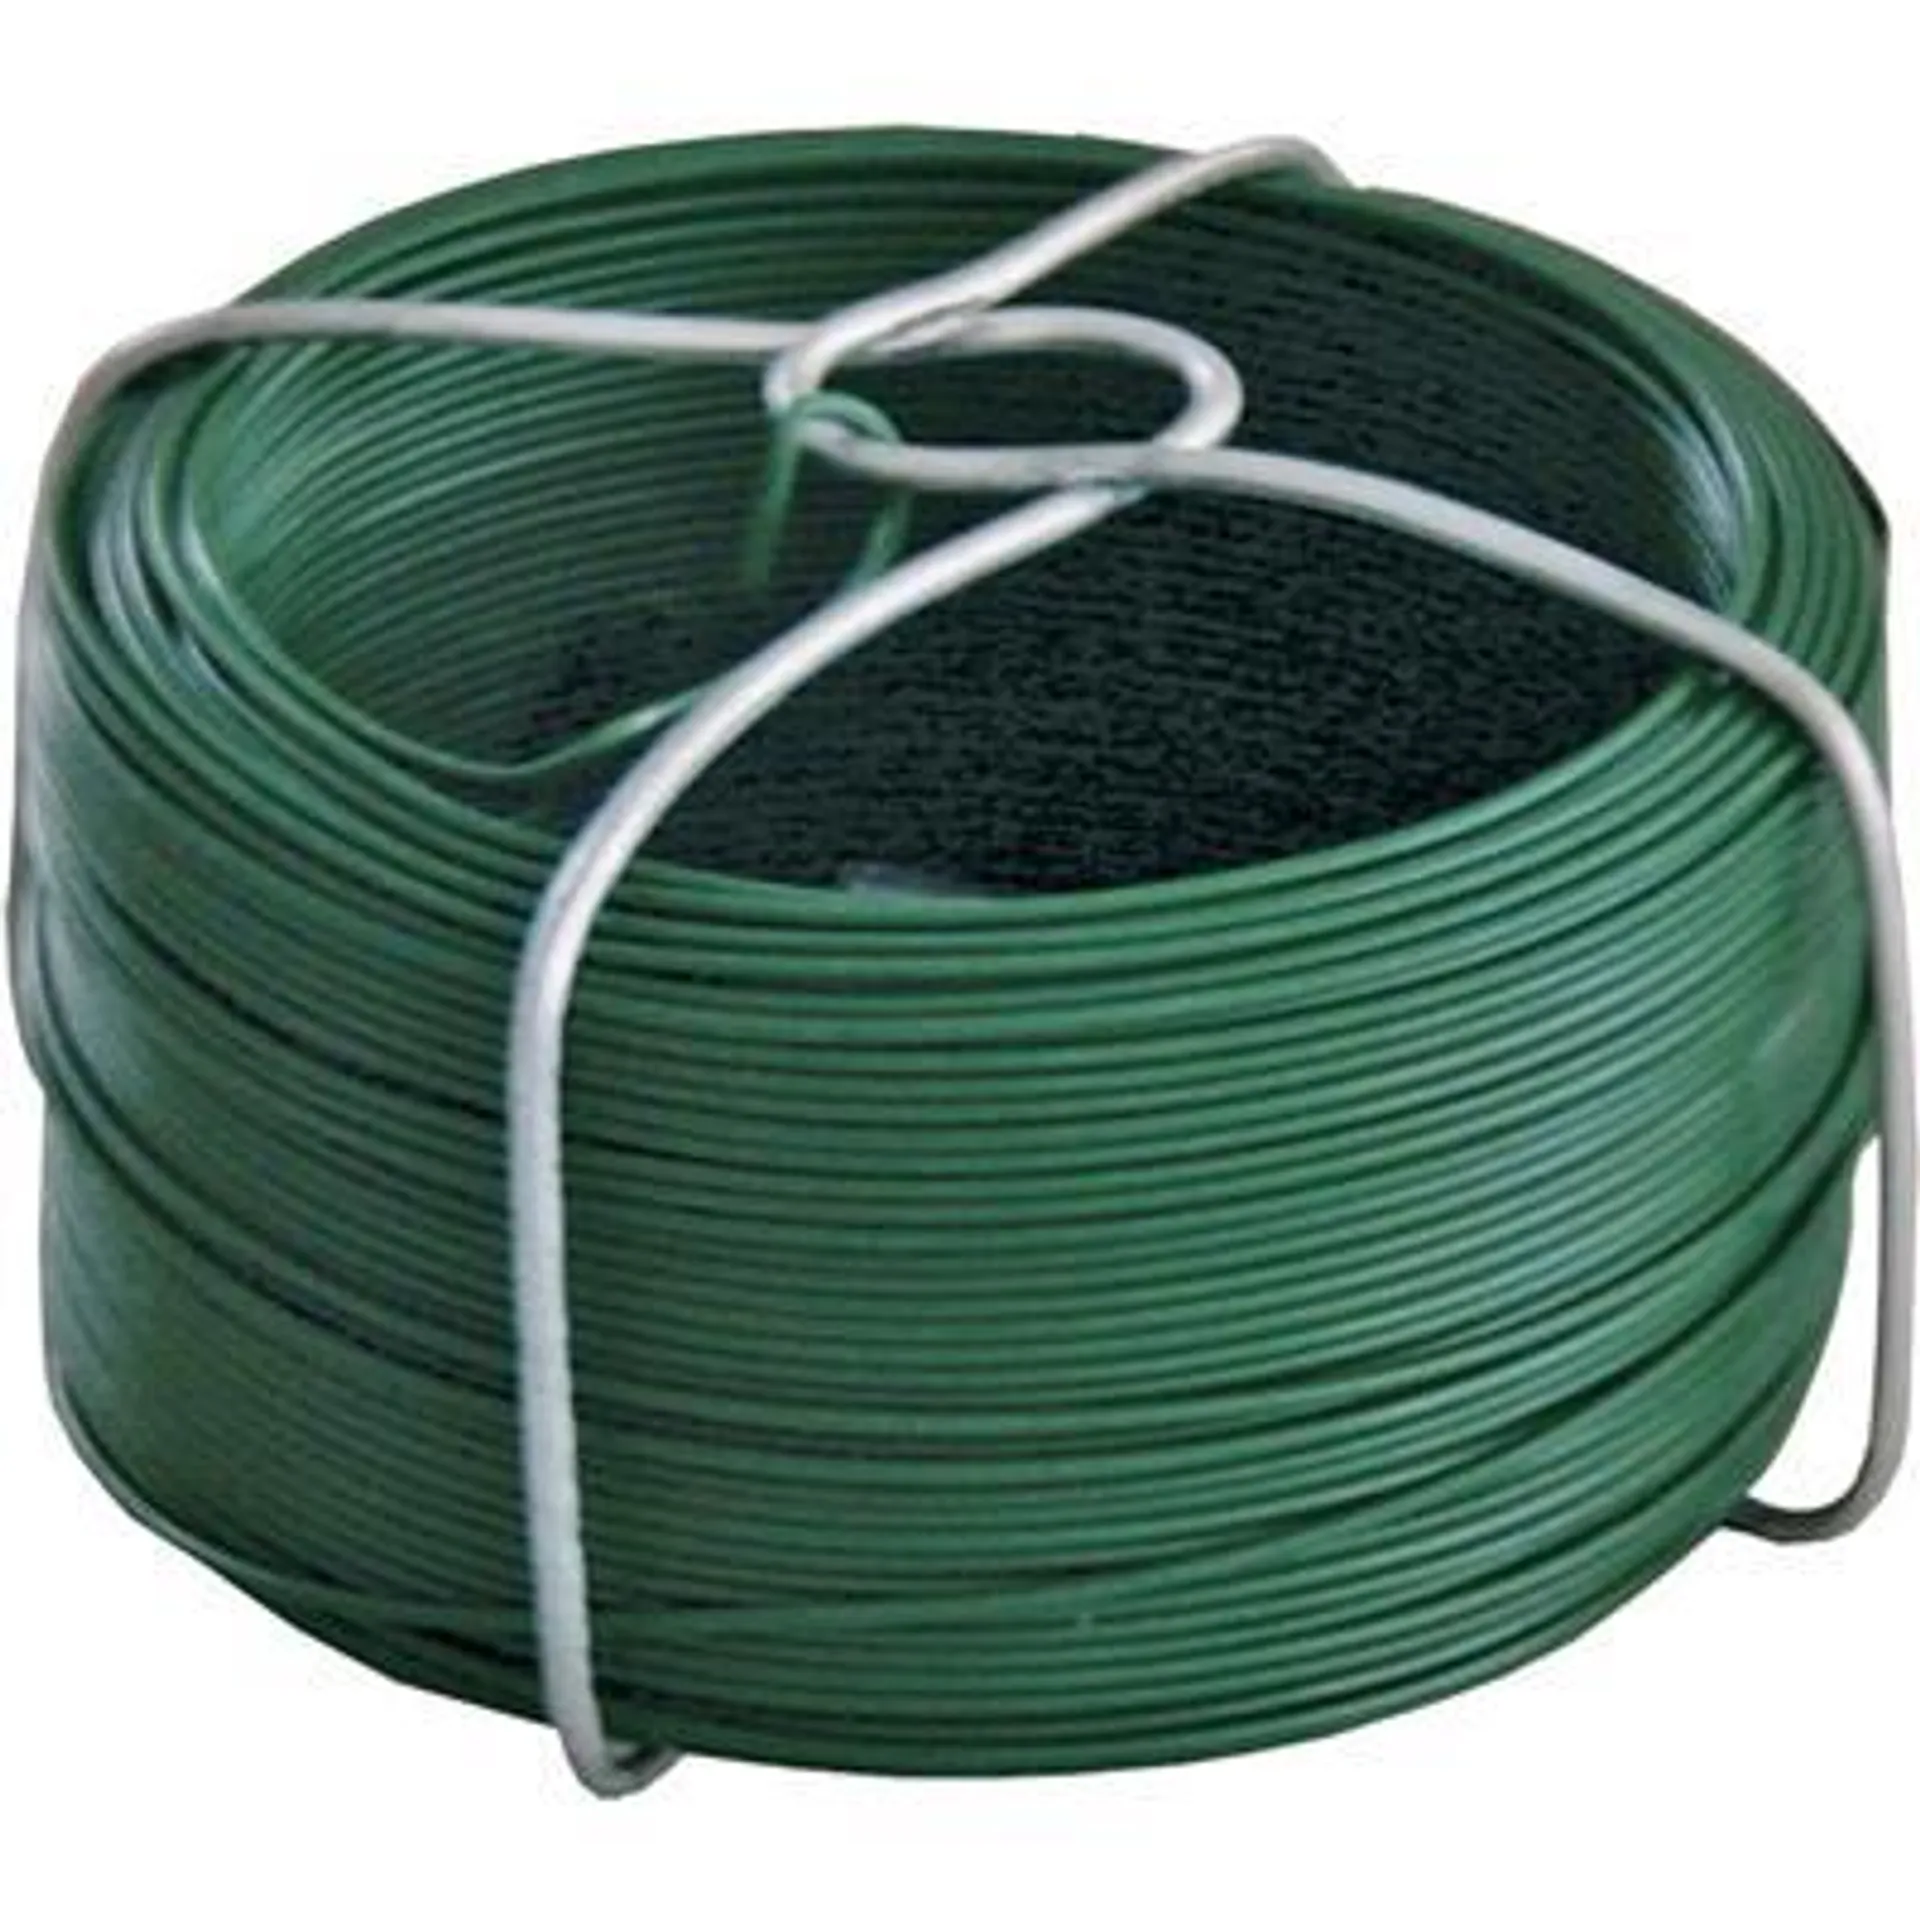 Bobinot de fil d'acier souple 1,5x50 plastifié vert